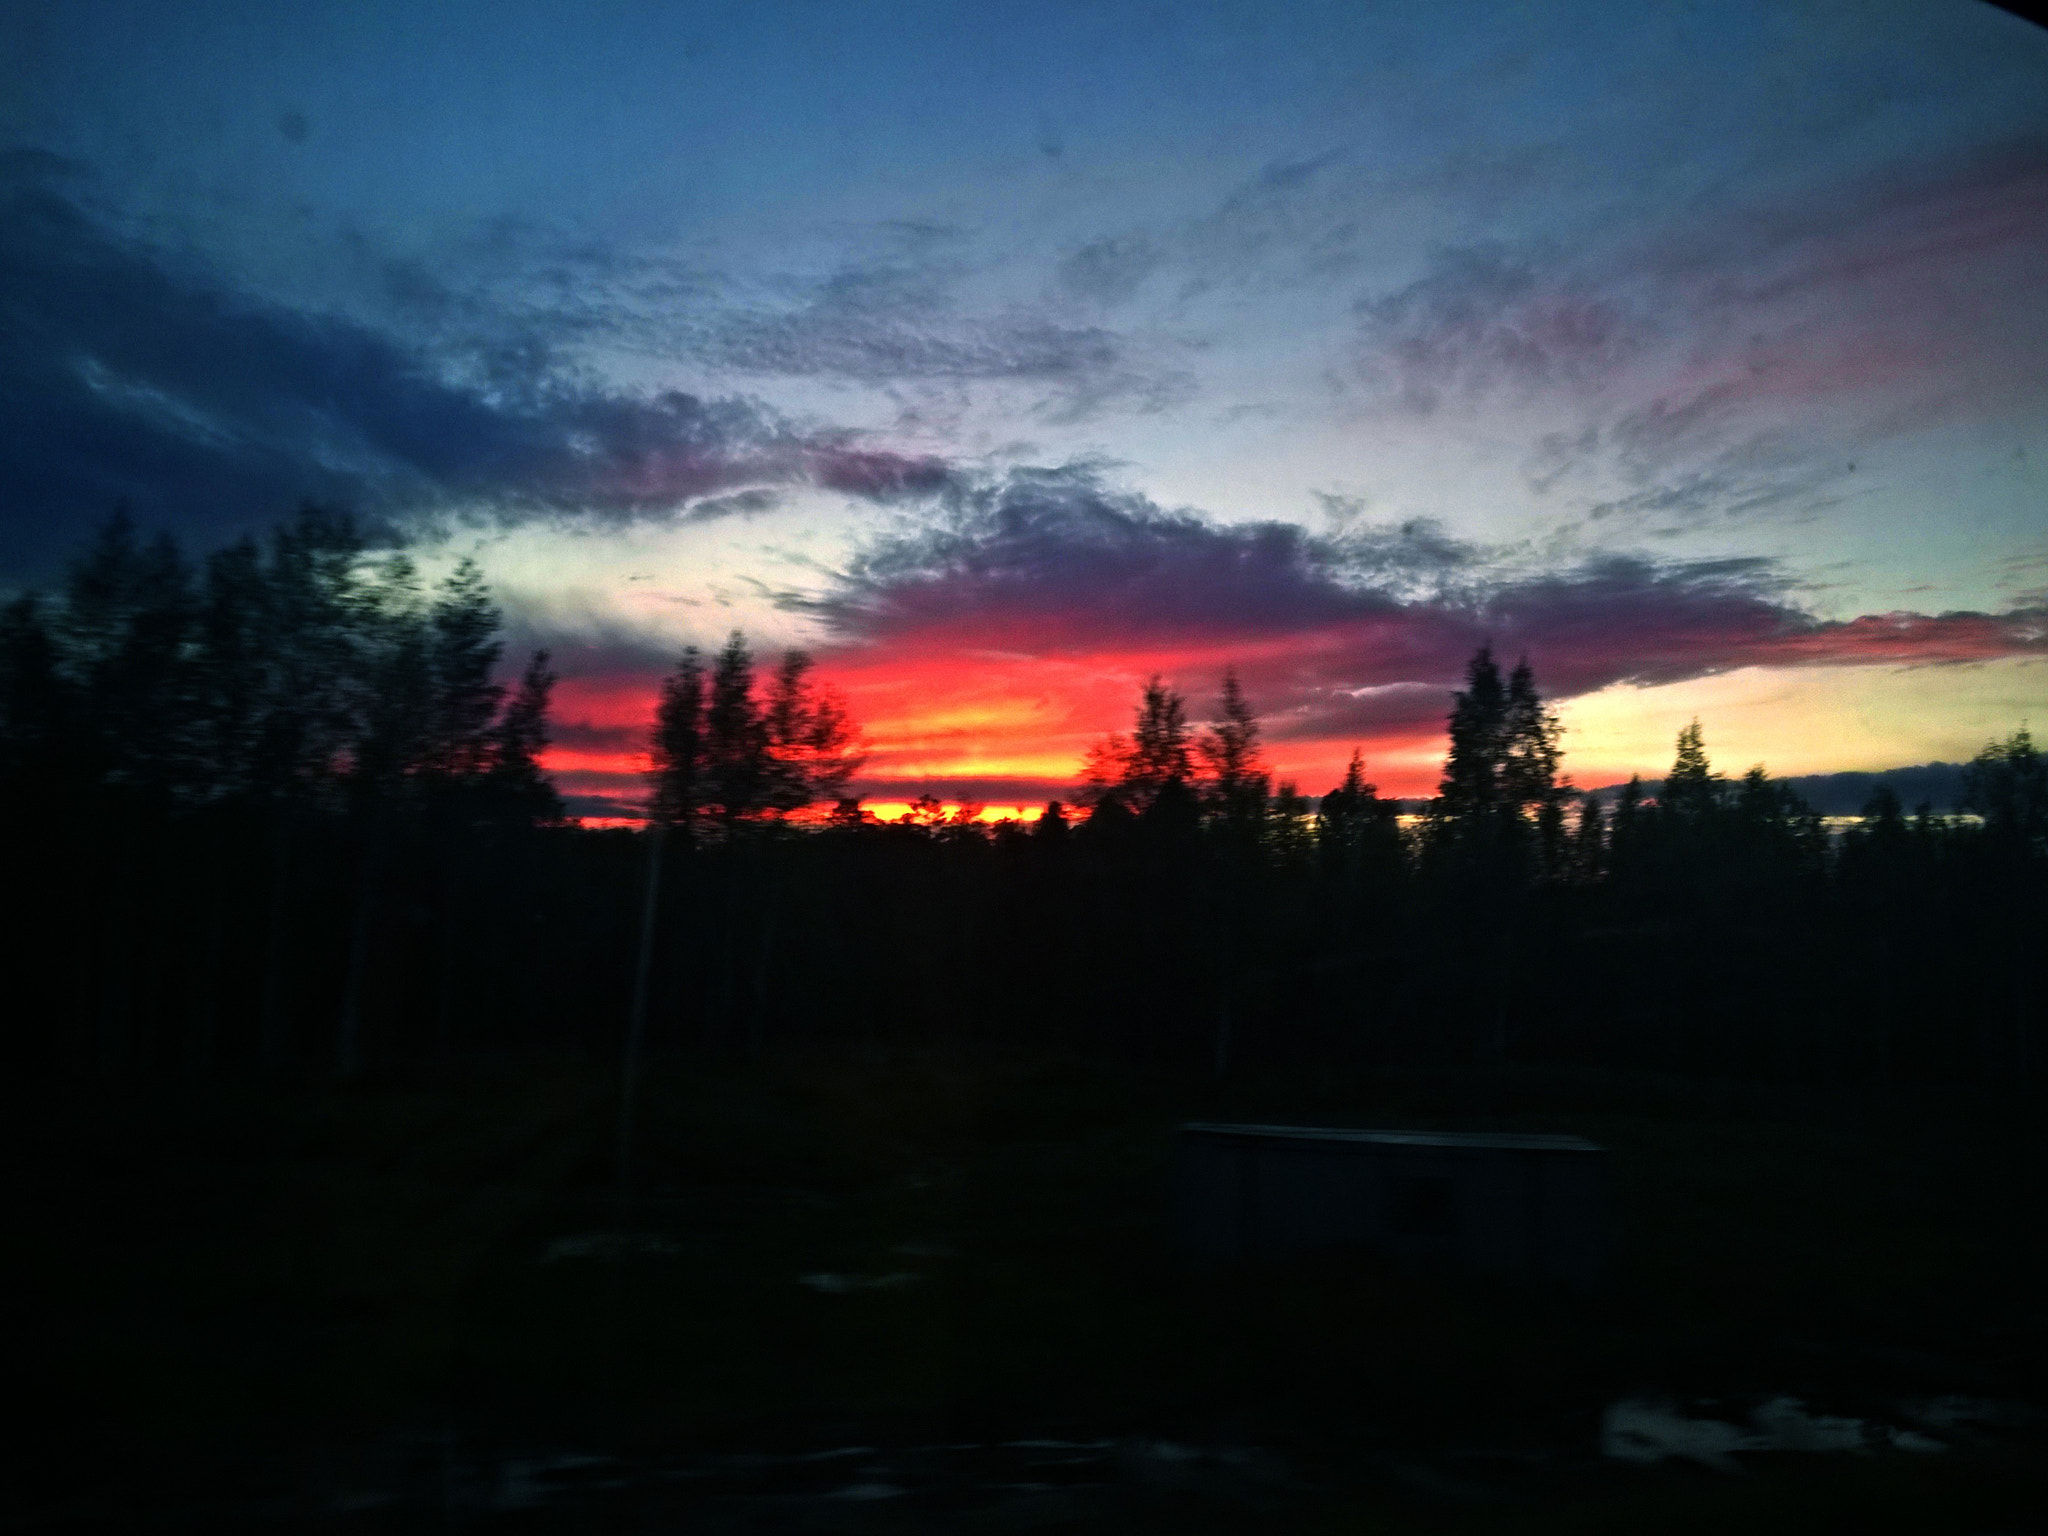 Nokia Lumia 830 sample photo. Sunset photography